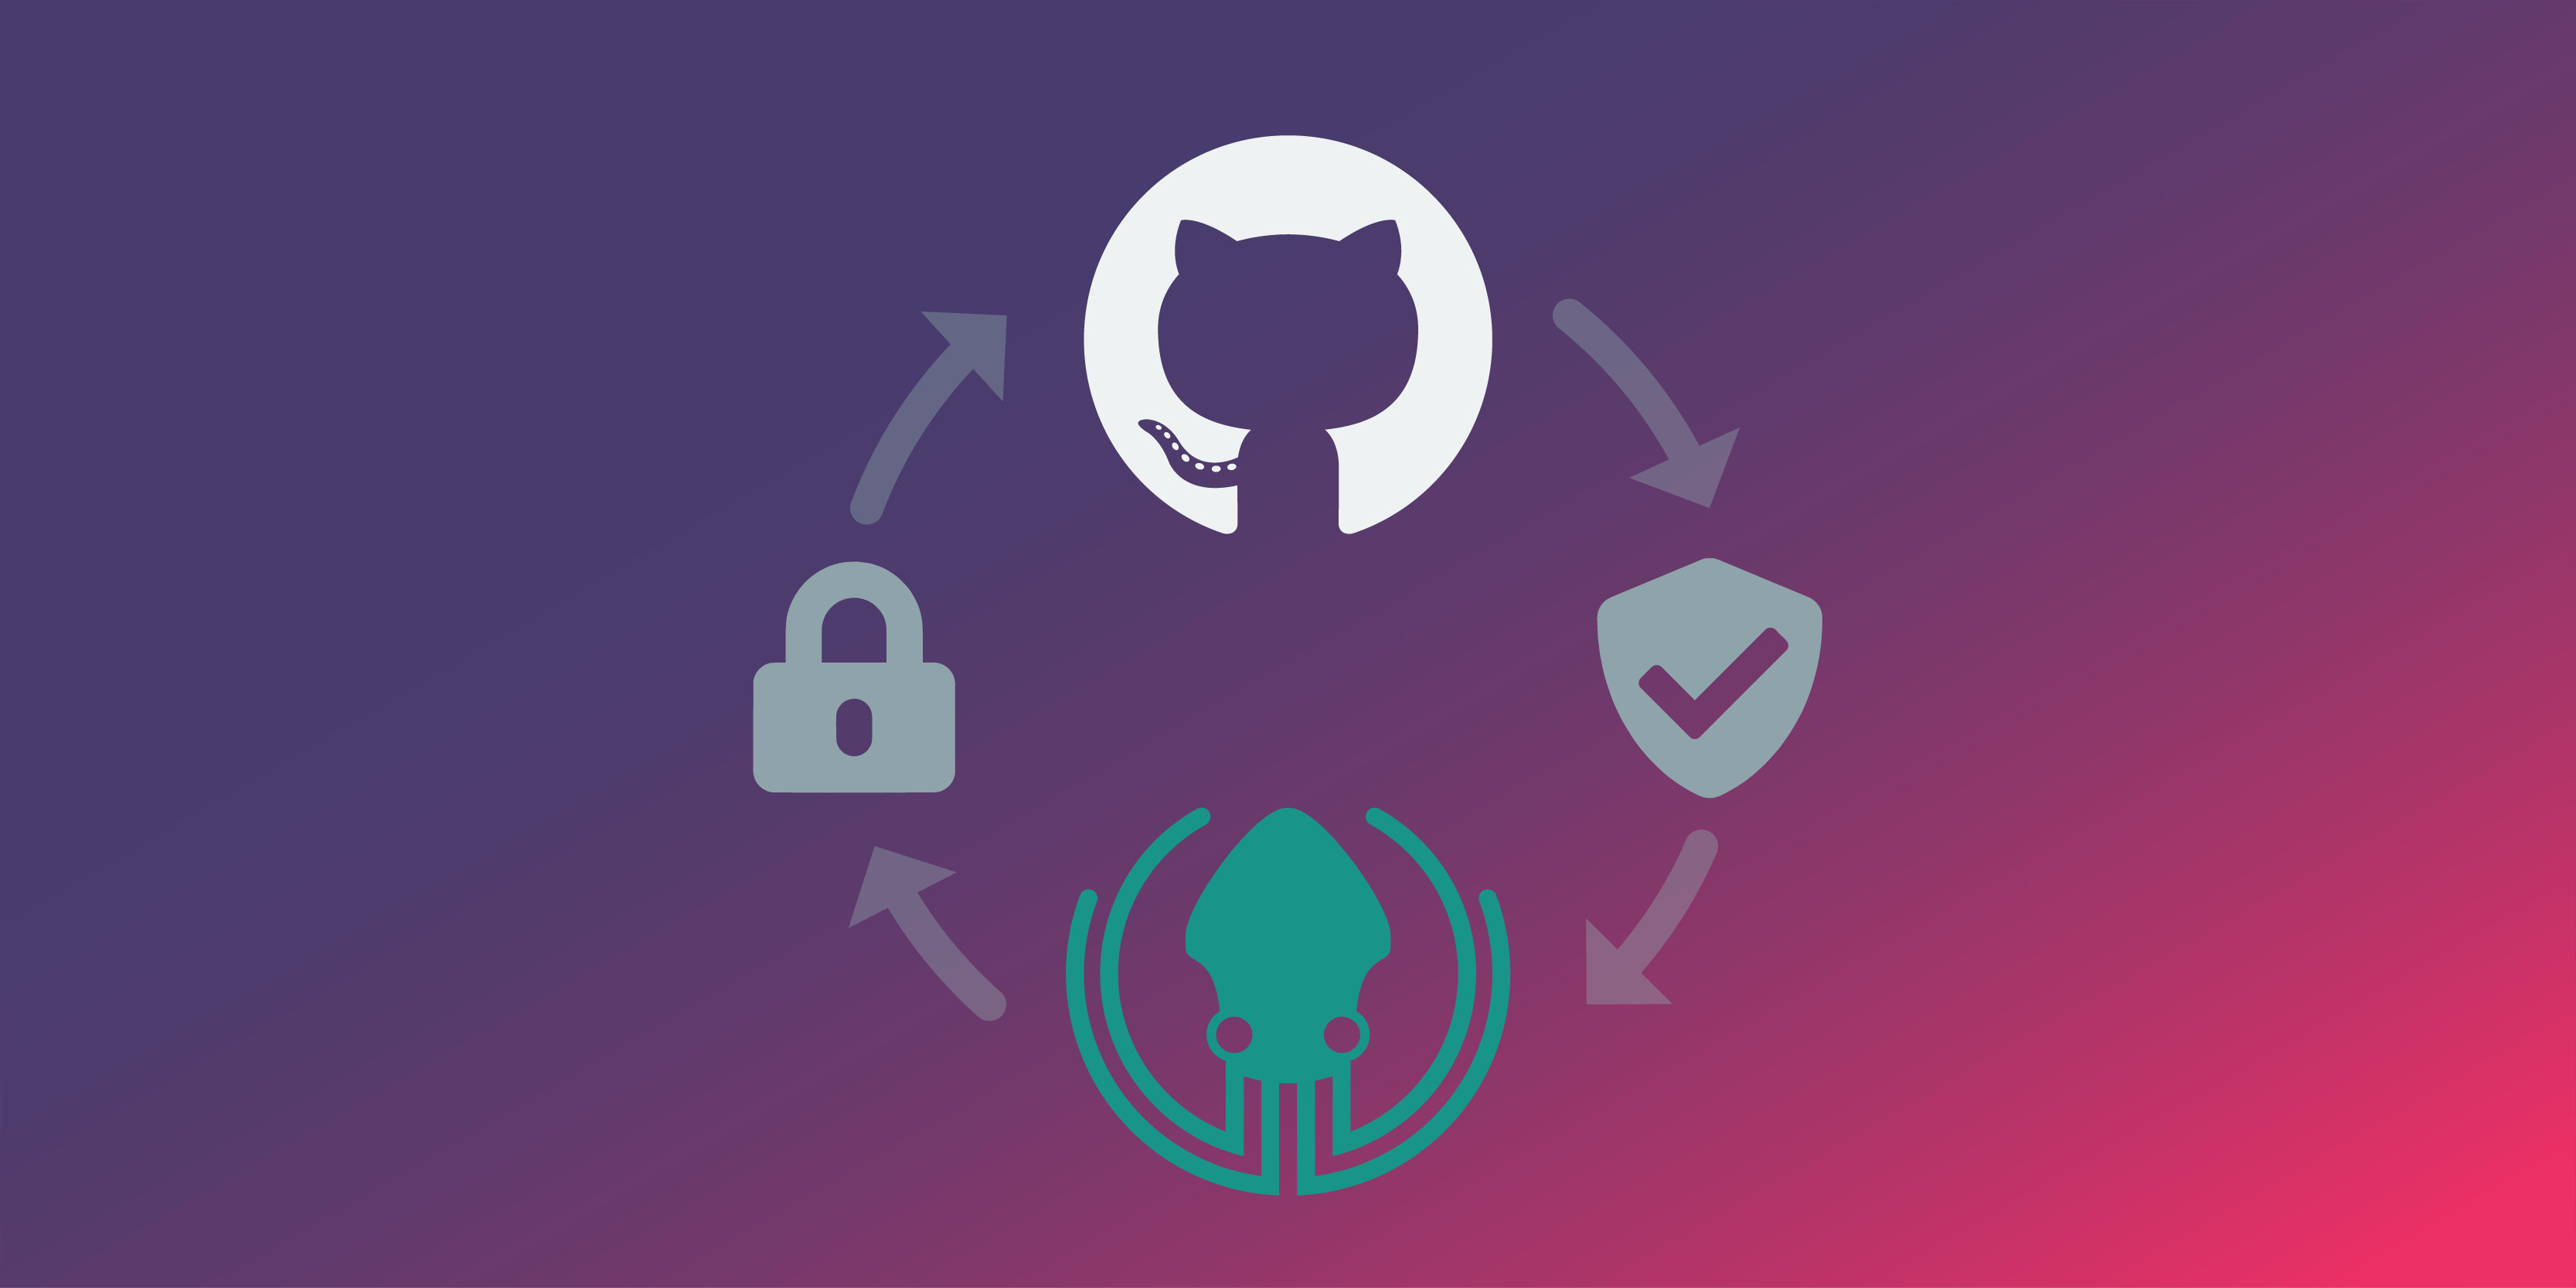 discord-badges · GitHub Topics · GitHub